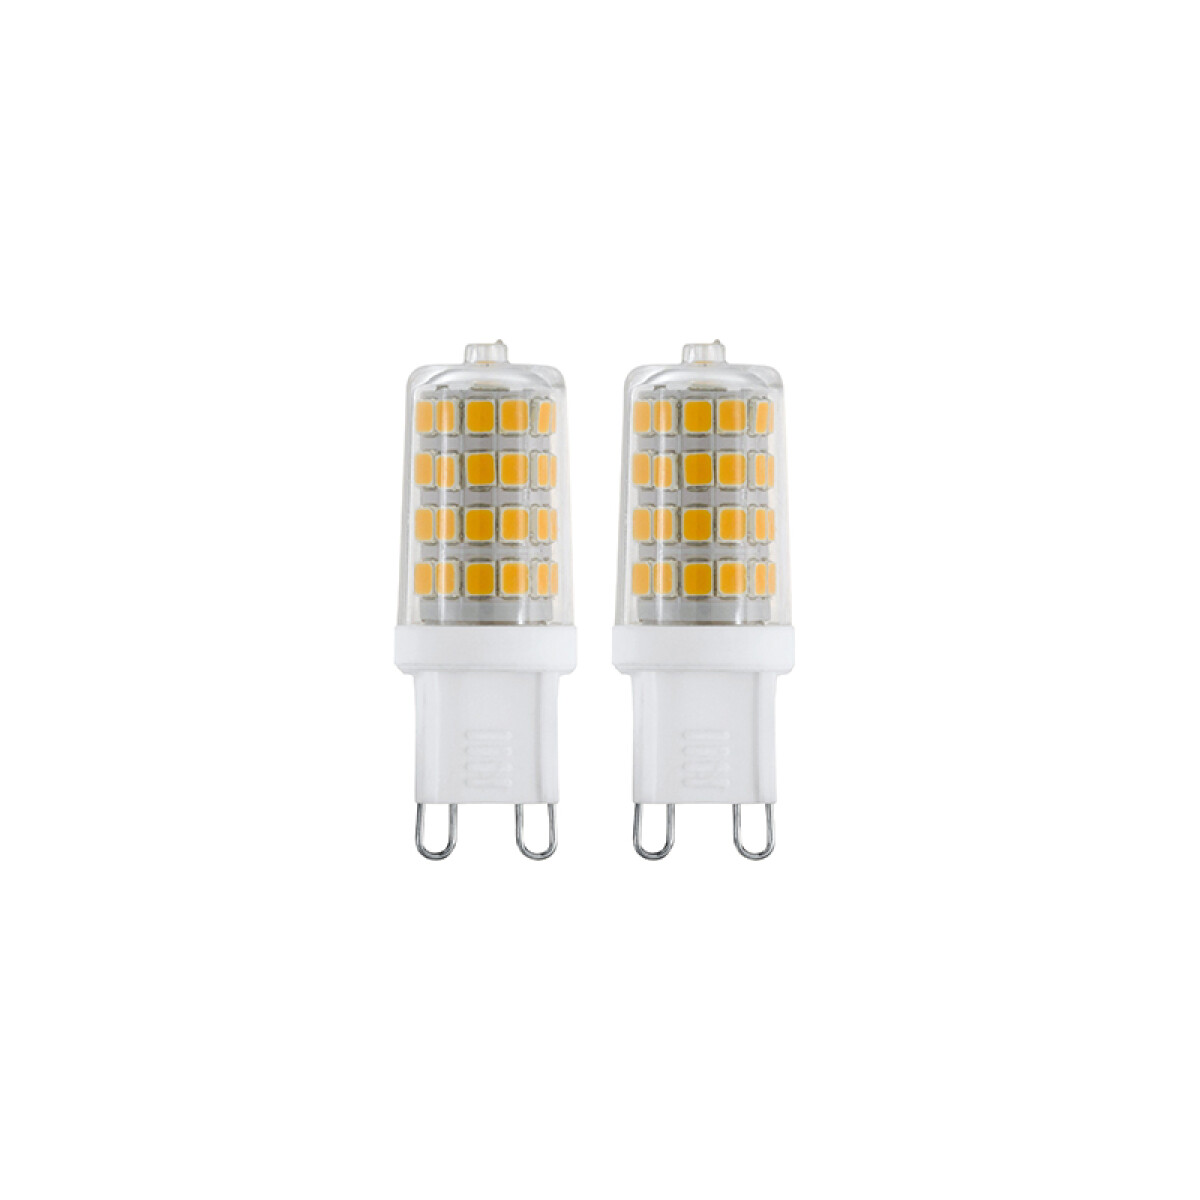 Kit 2 lámparas LED SMD G9 3W cálida 320Lm - EG5100 